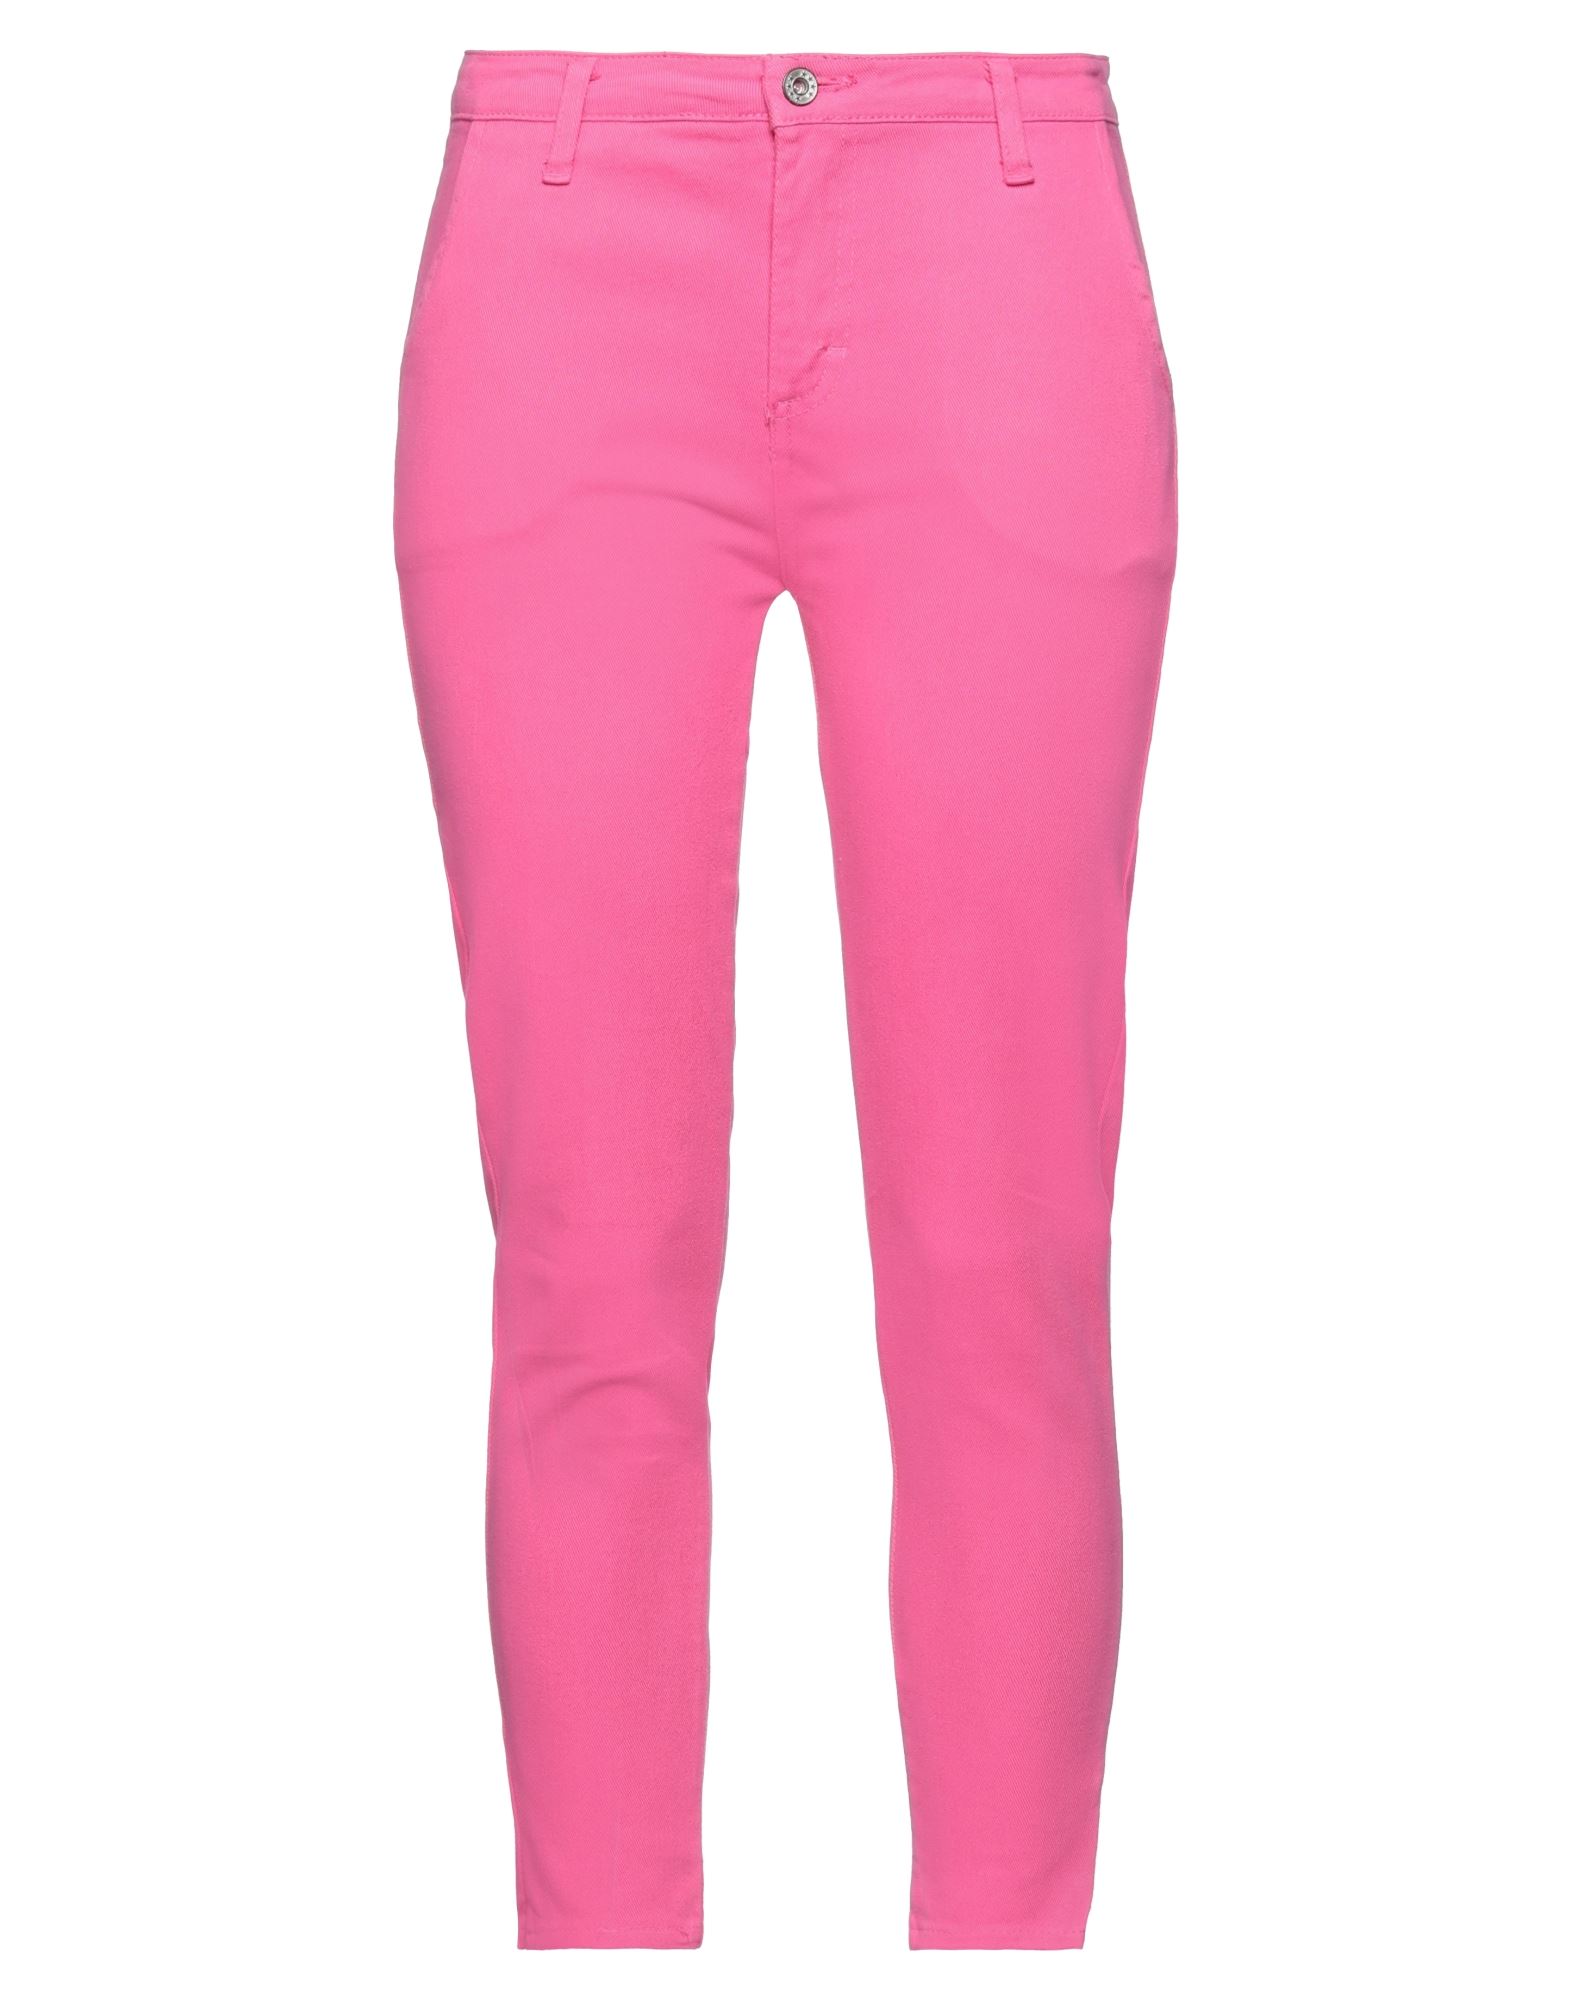 Boutique De La Femme Pants In Pink